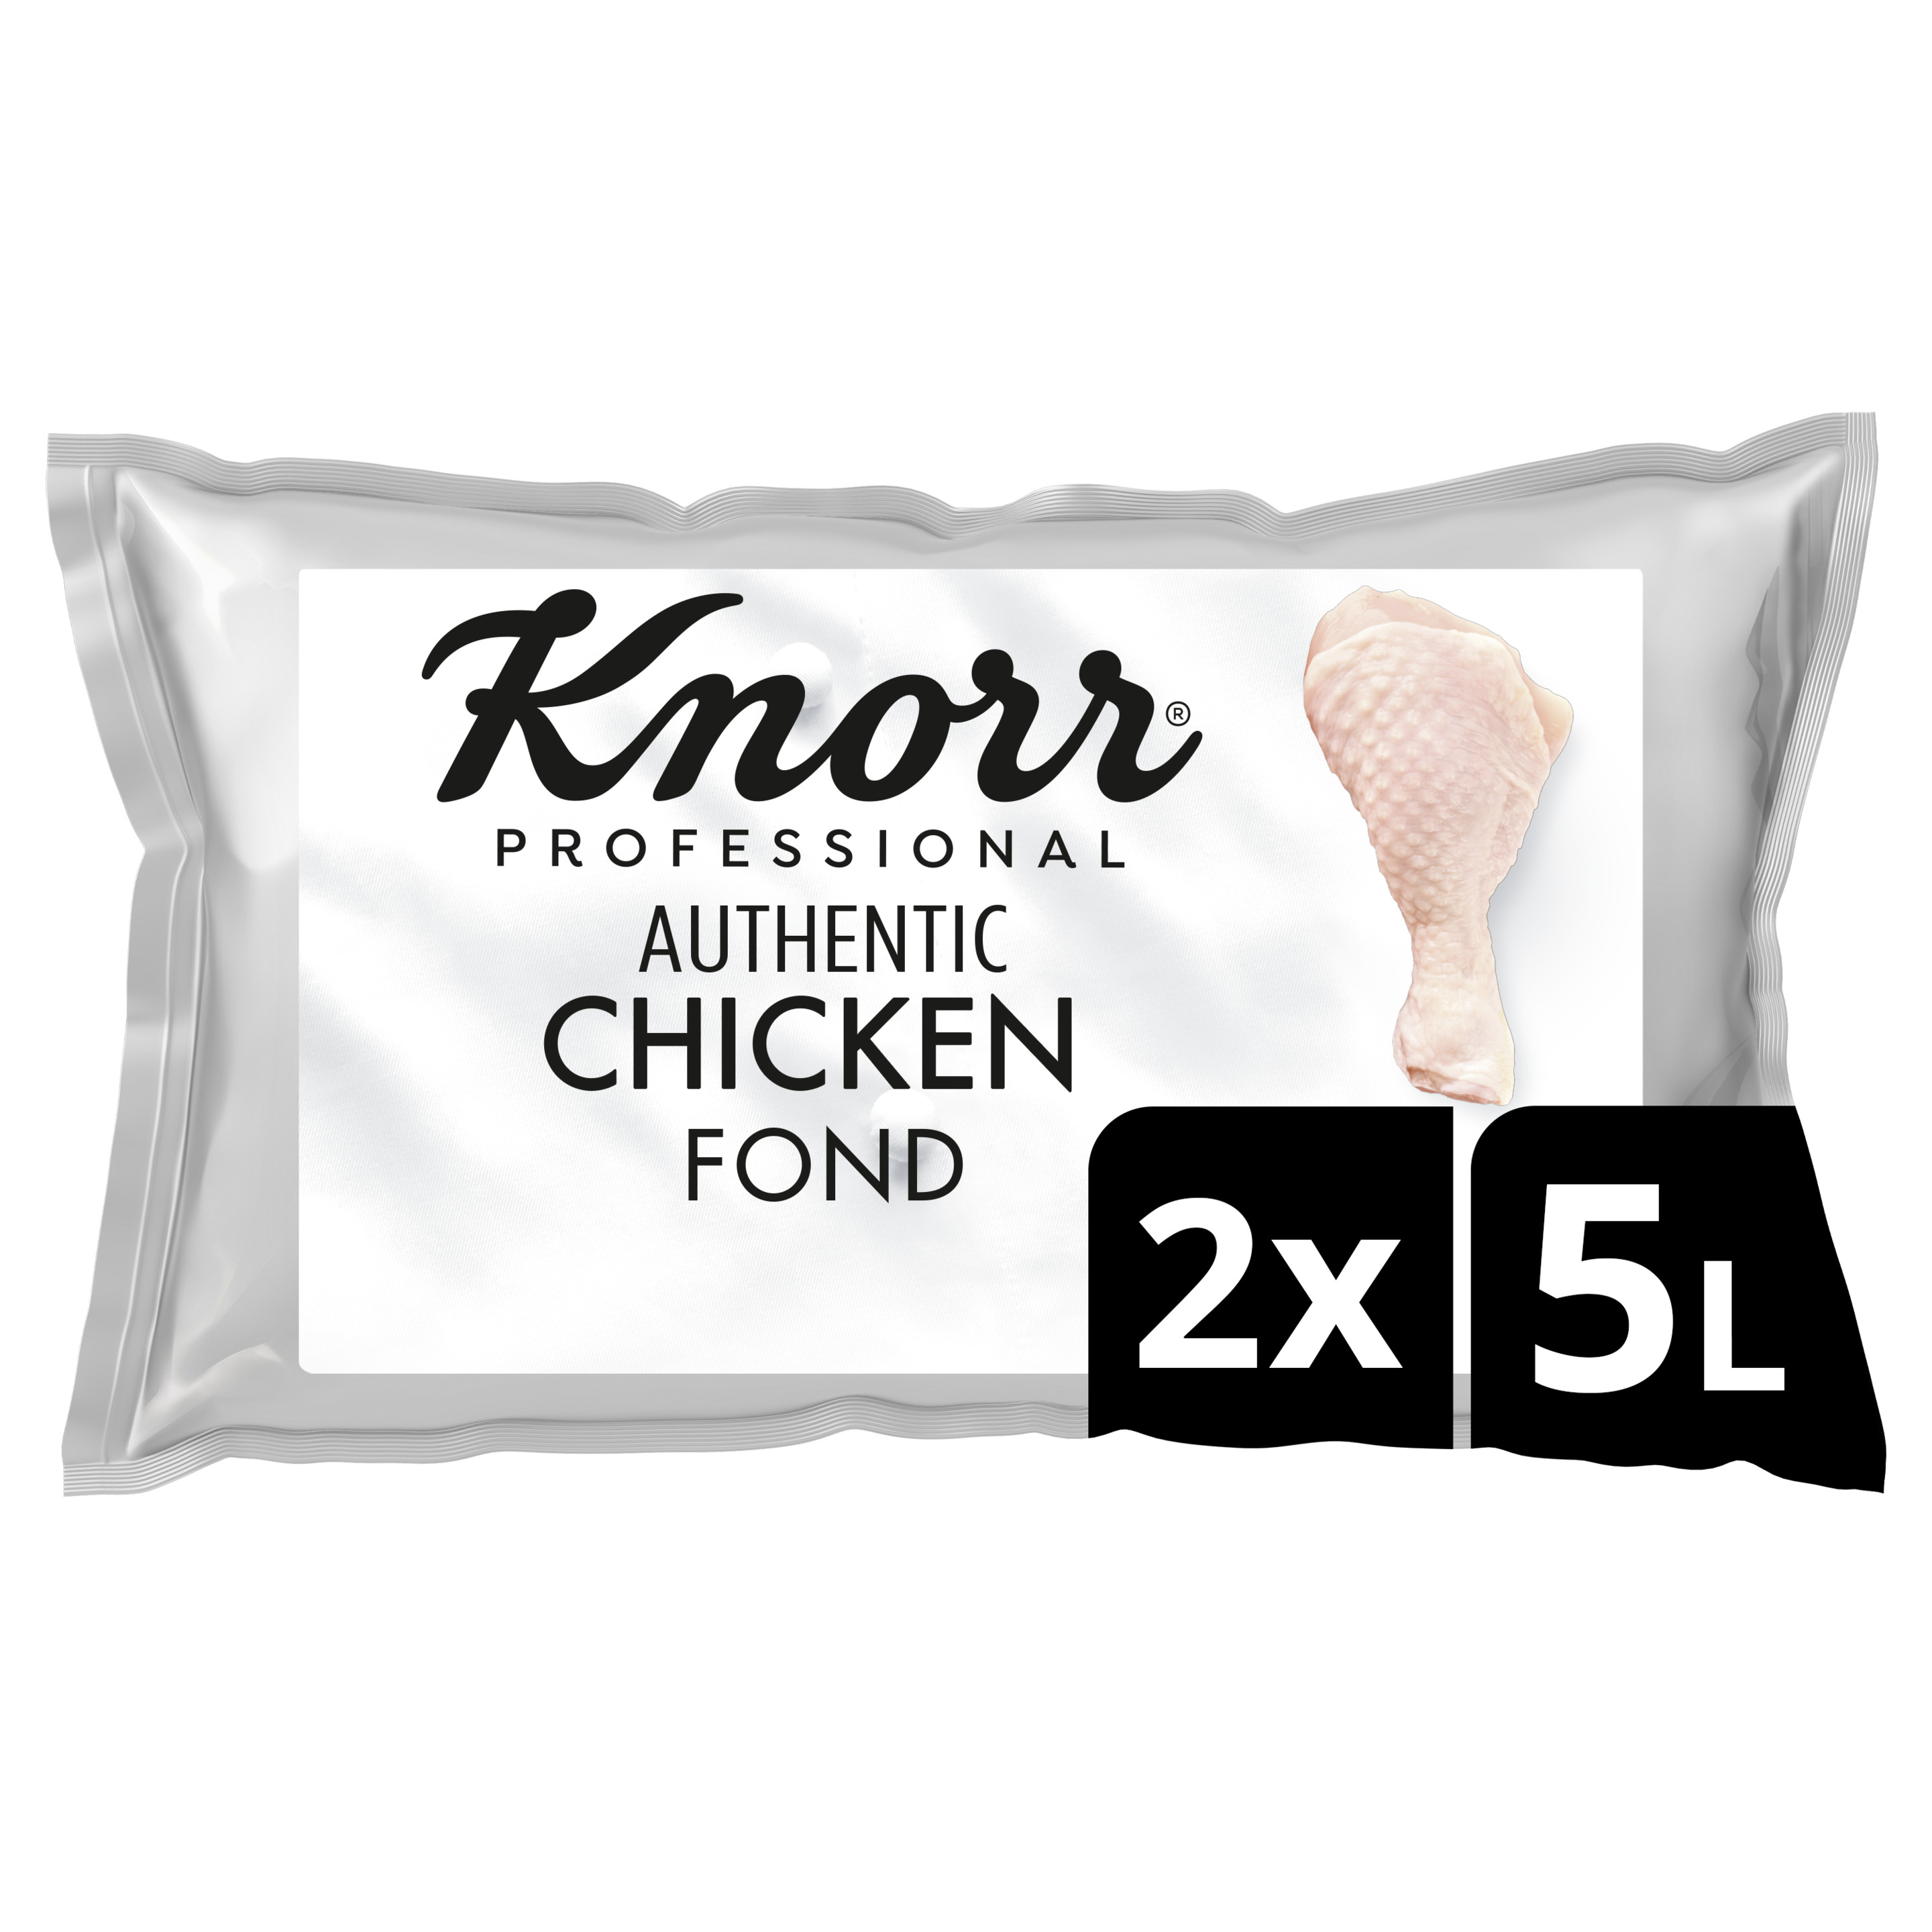 Knorr Professional Kycklingfond 2 x 5 L - Knorr Professional Kycklingfond gör det nödvändiga. Du det minnesvärda!